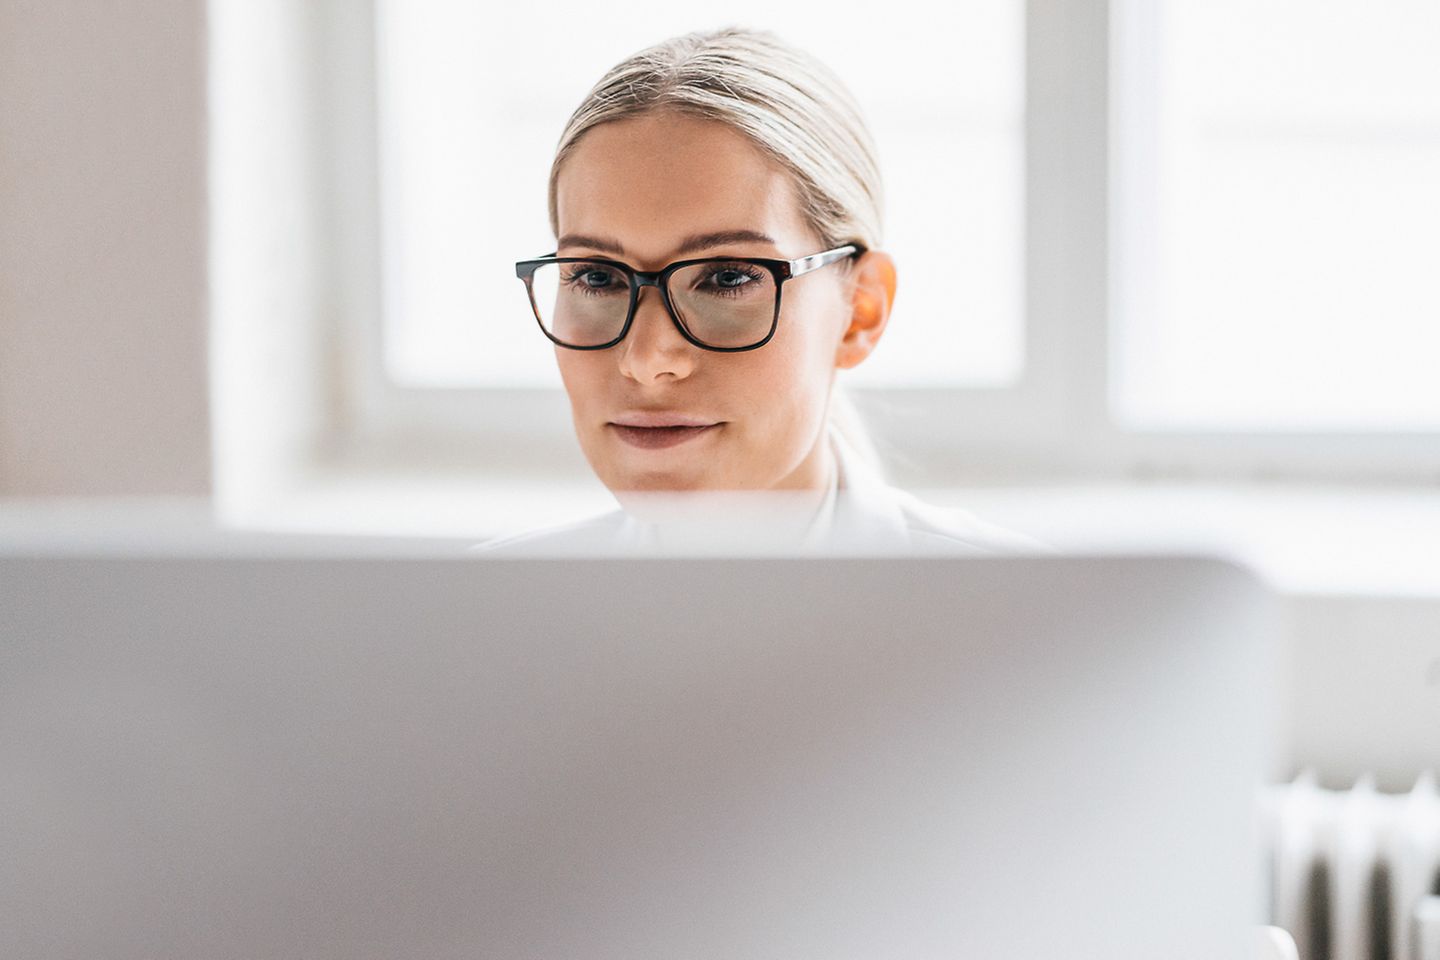 Mujer joven con gafas oscuras sentada detrás del monitor